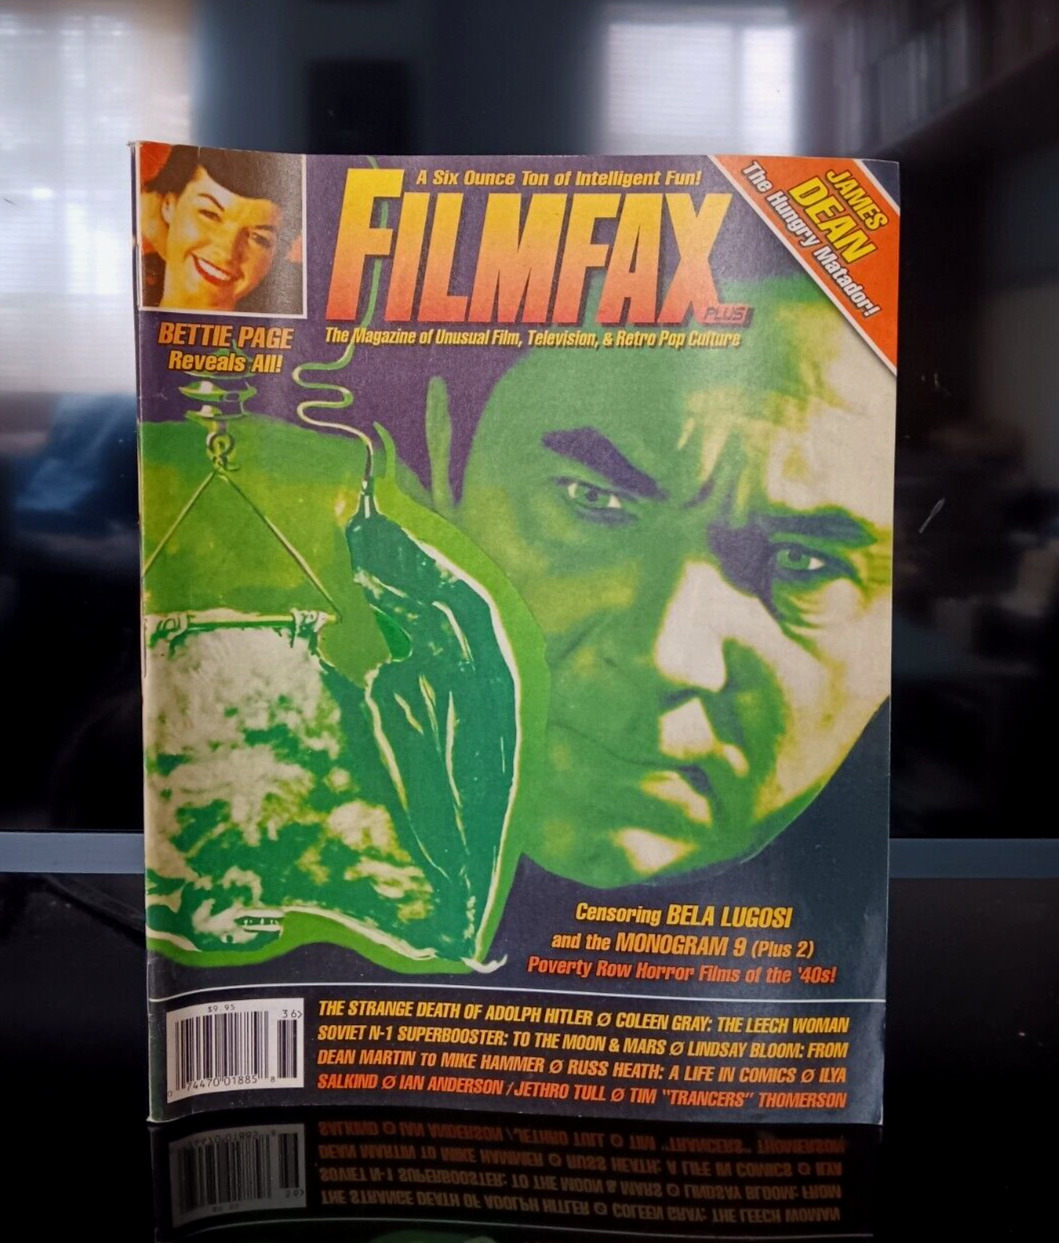 Filmfax Movie Magazine James Dean,Bettie Page,The Strange Death Of Adolf Hitler